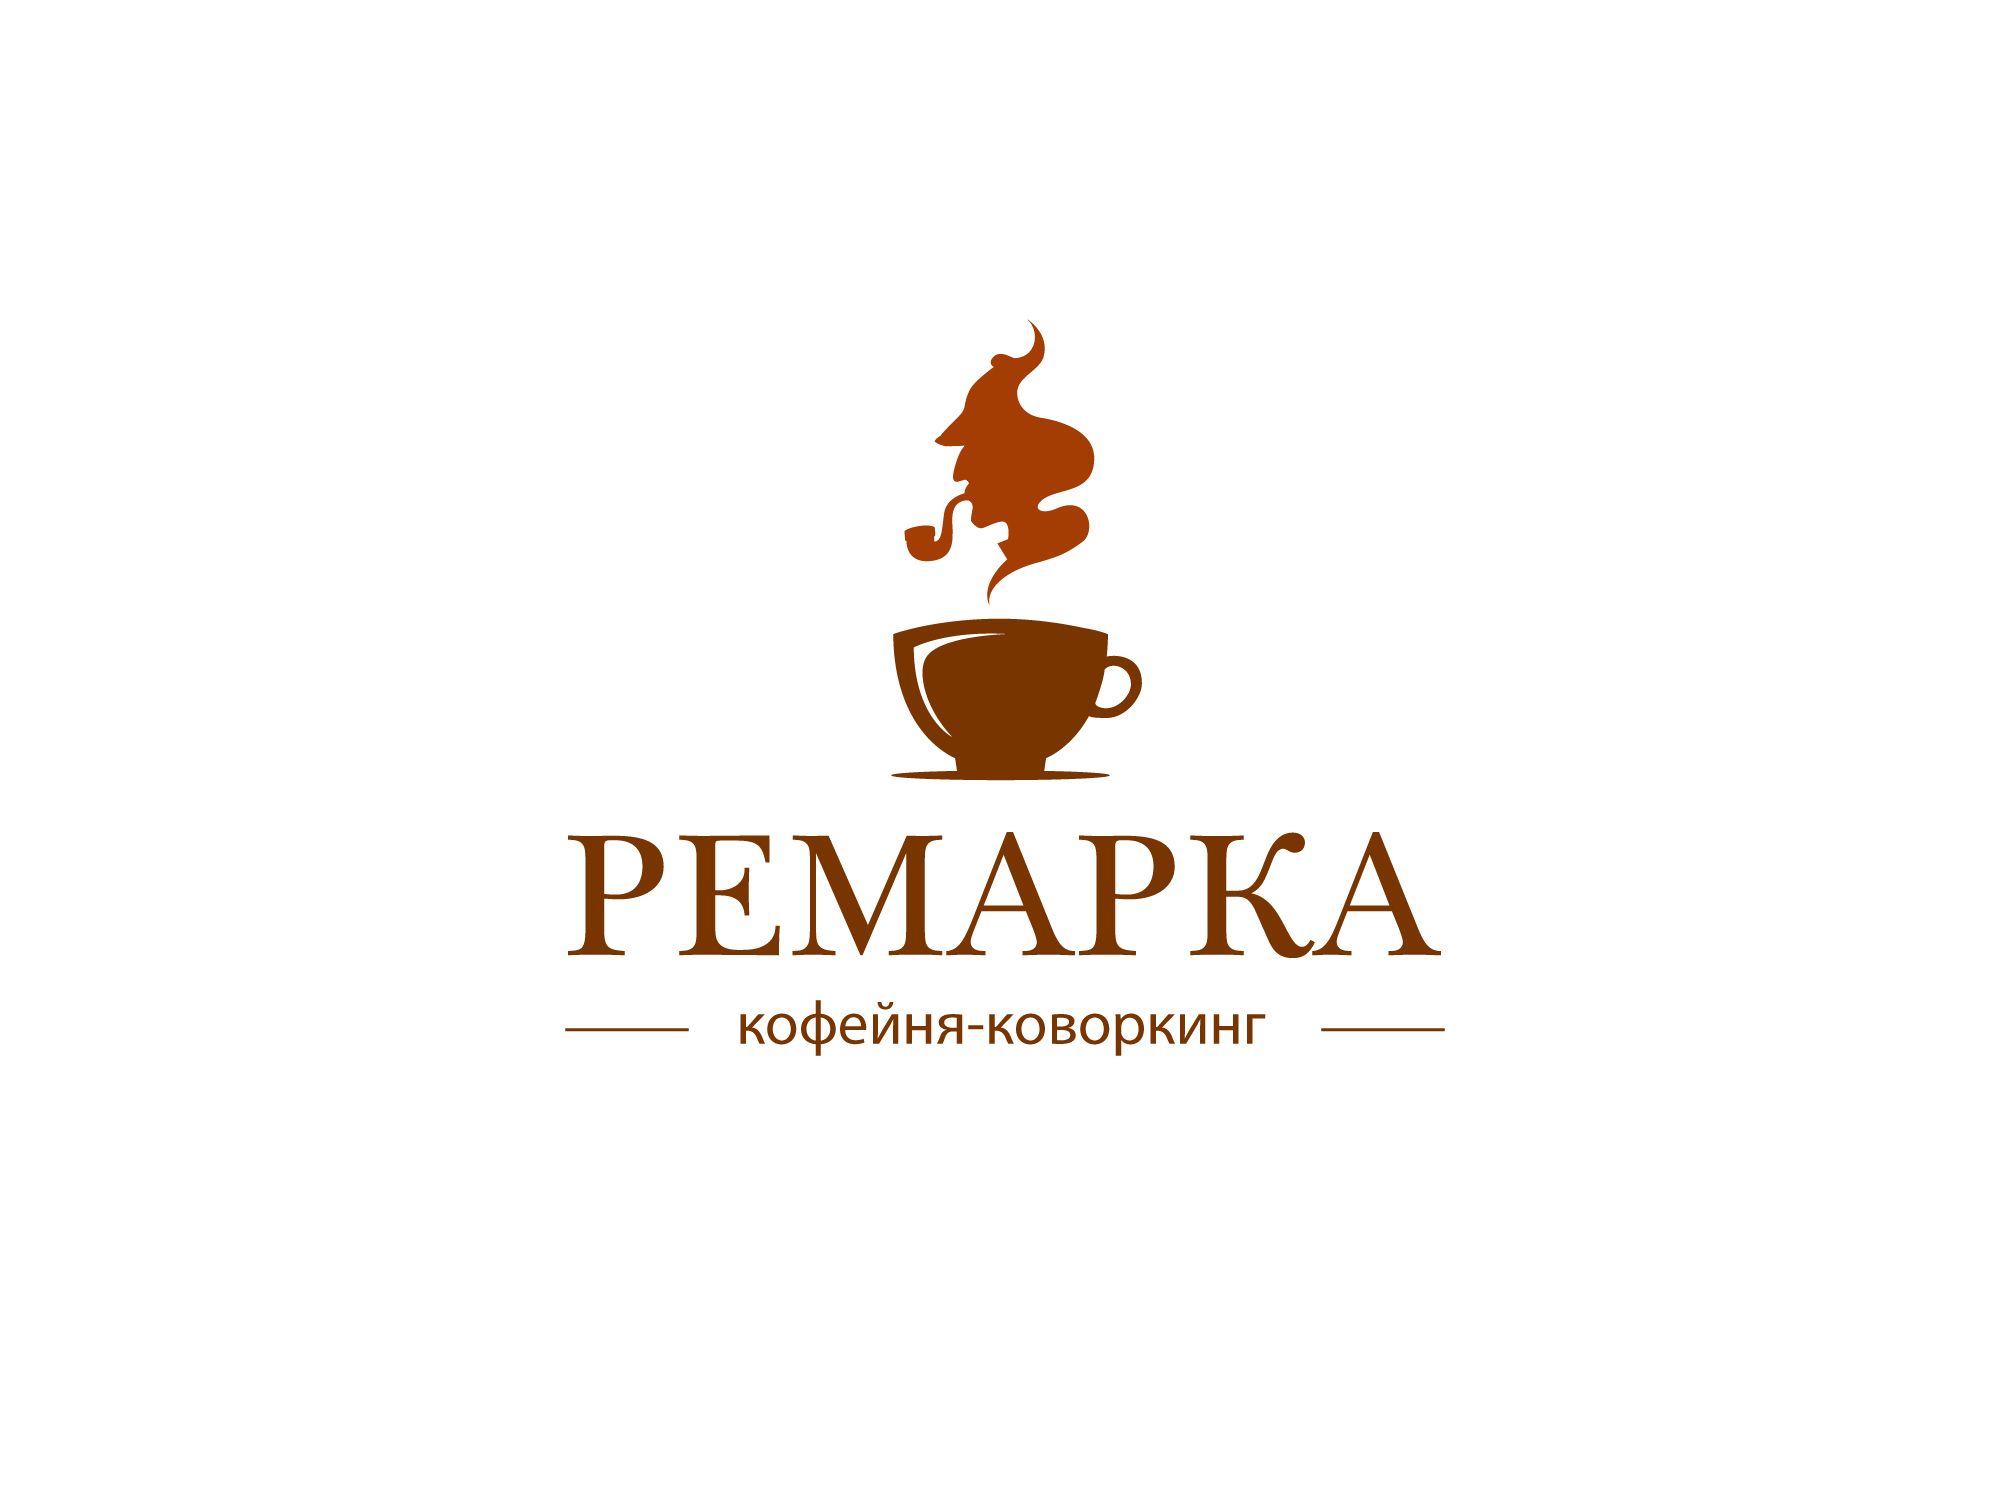 Лого и фирменный стиль для Ремарка кофейня-коворкинг - дизайнер Johnn1k